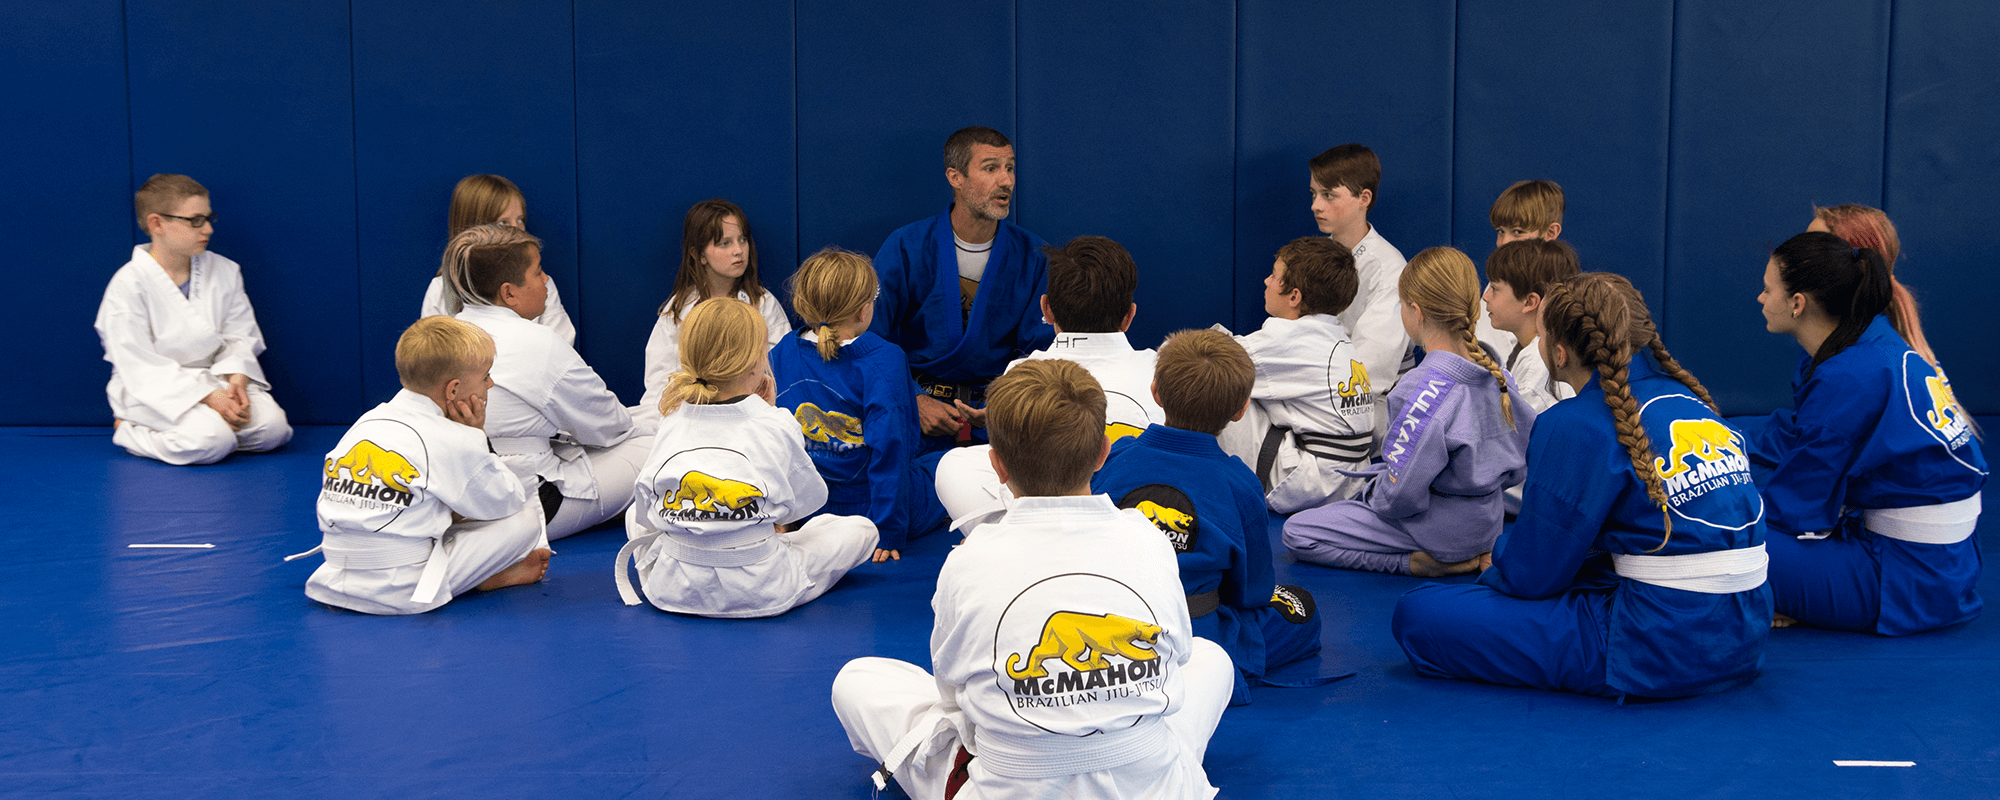 children-Martial-arts-mat-chat